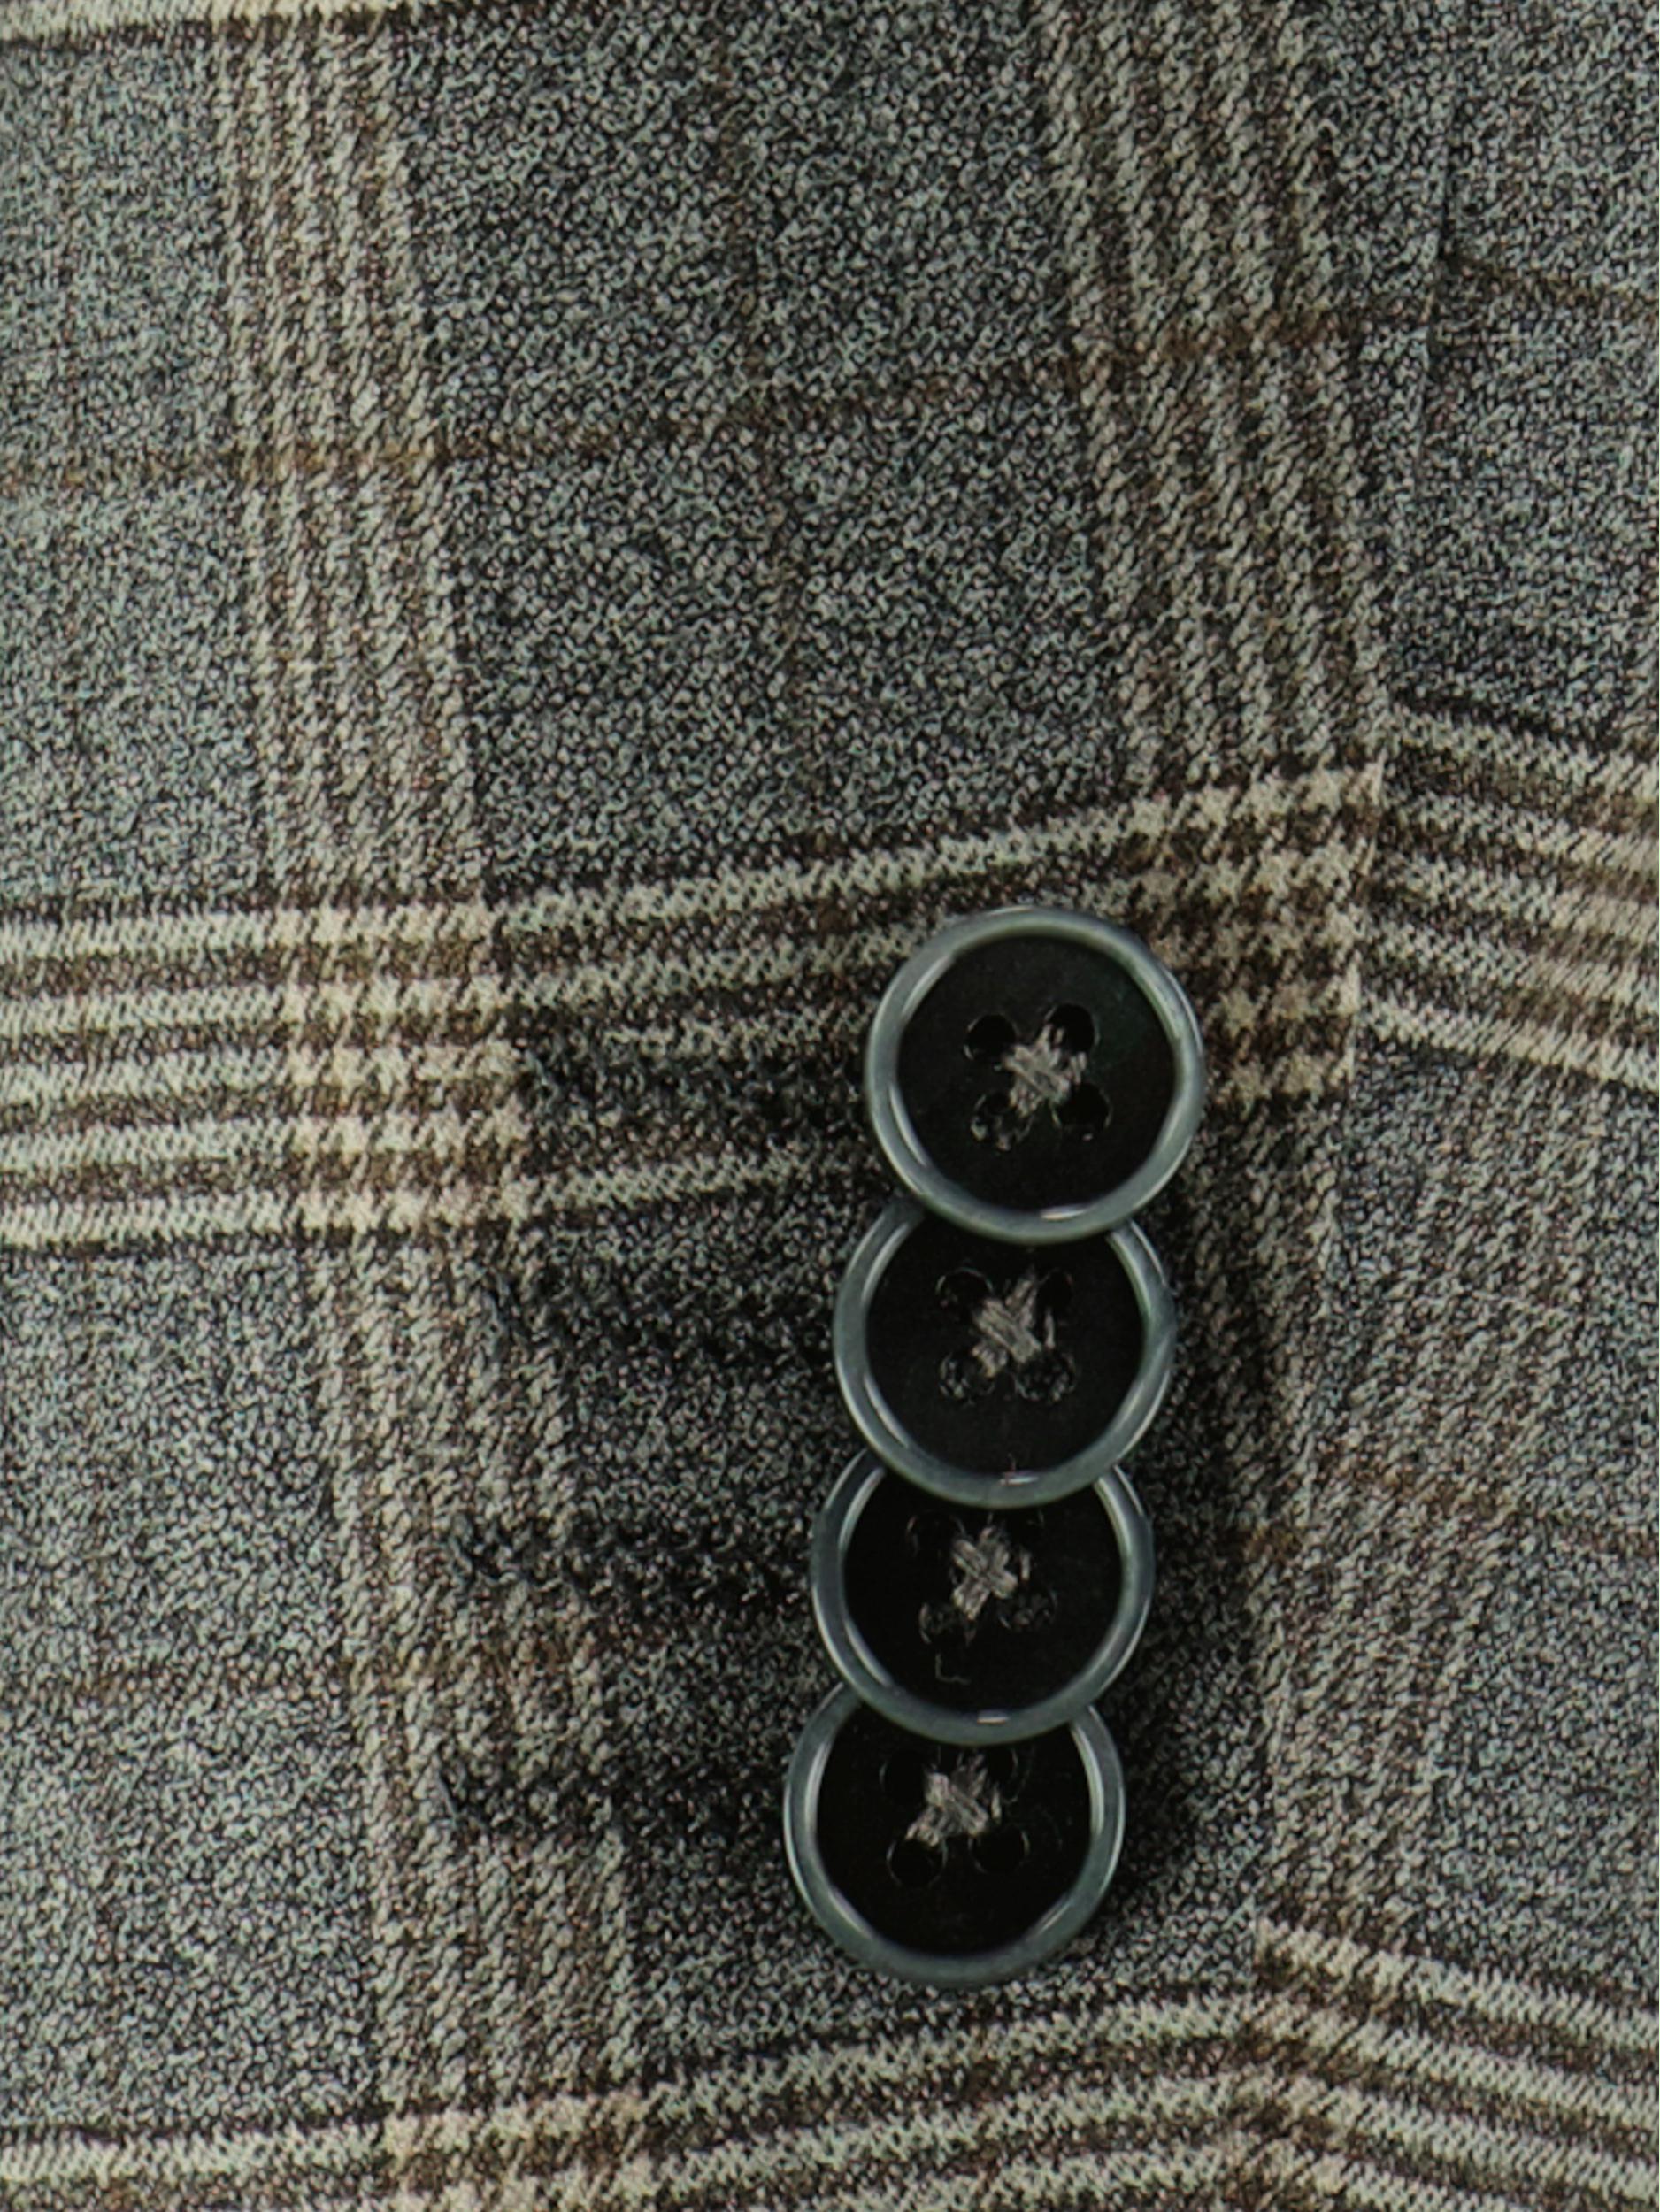 Scotland Blue Kostuum Grijs Toulon Suit Drop 8 213028TO18SB/940 grey